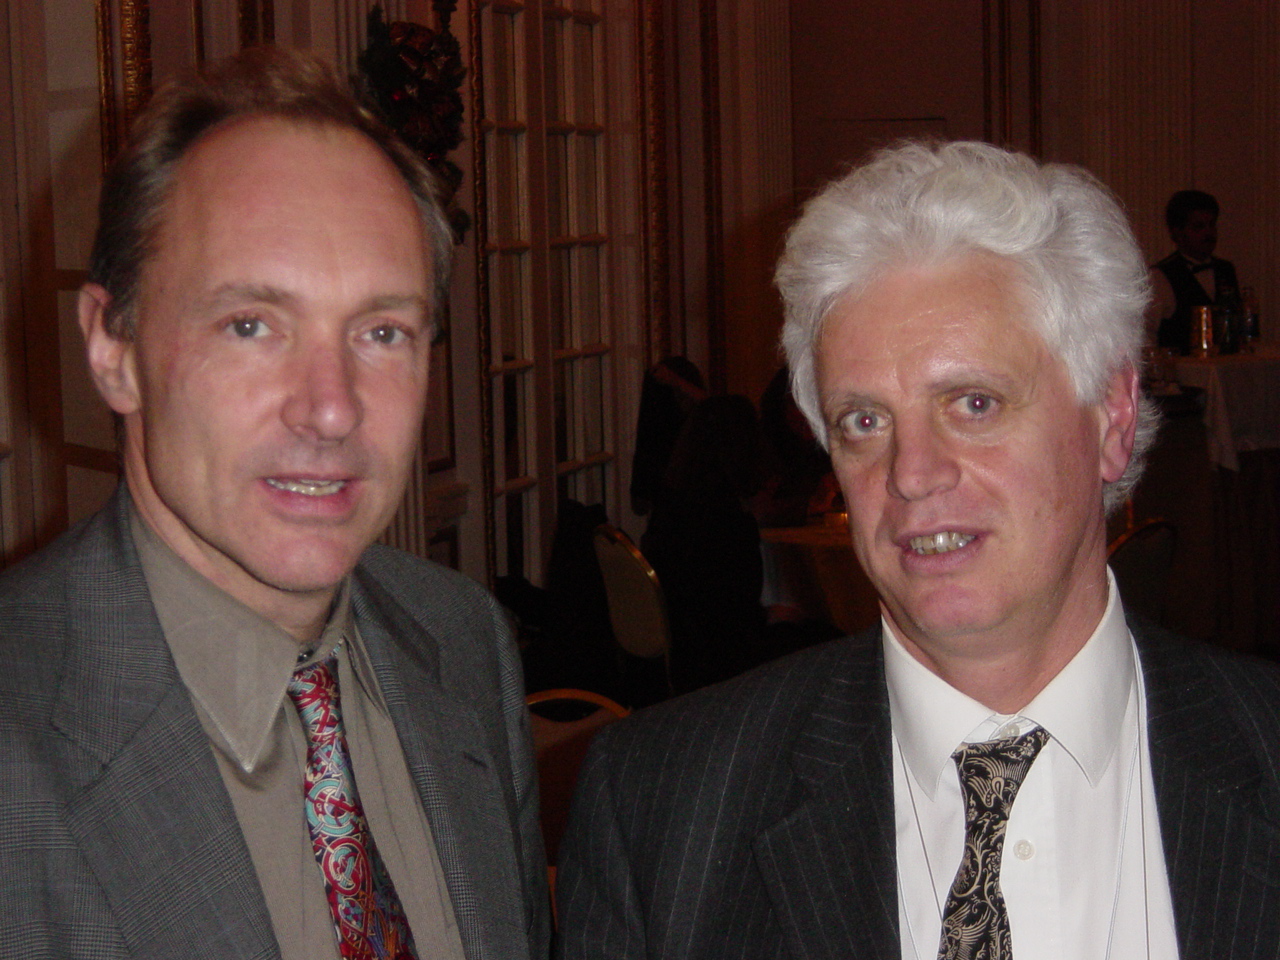 Tim Berners-Lee e Oreste Signore al decennale del W3C - dicembre 2004